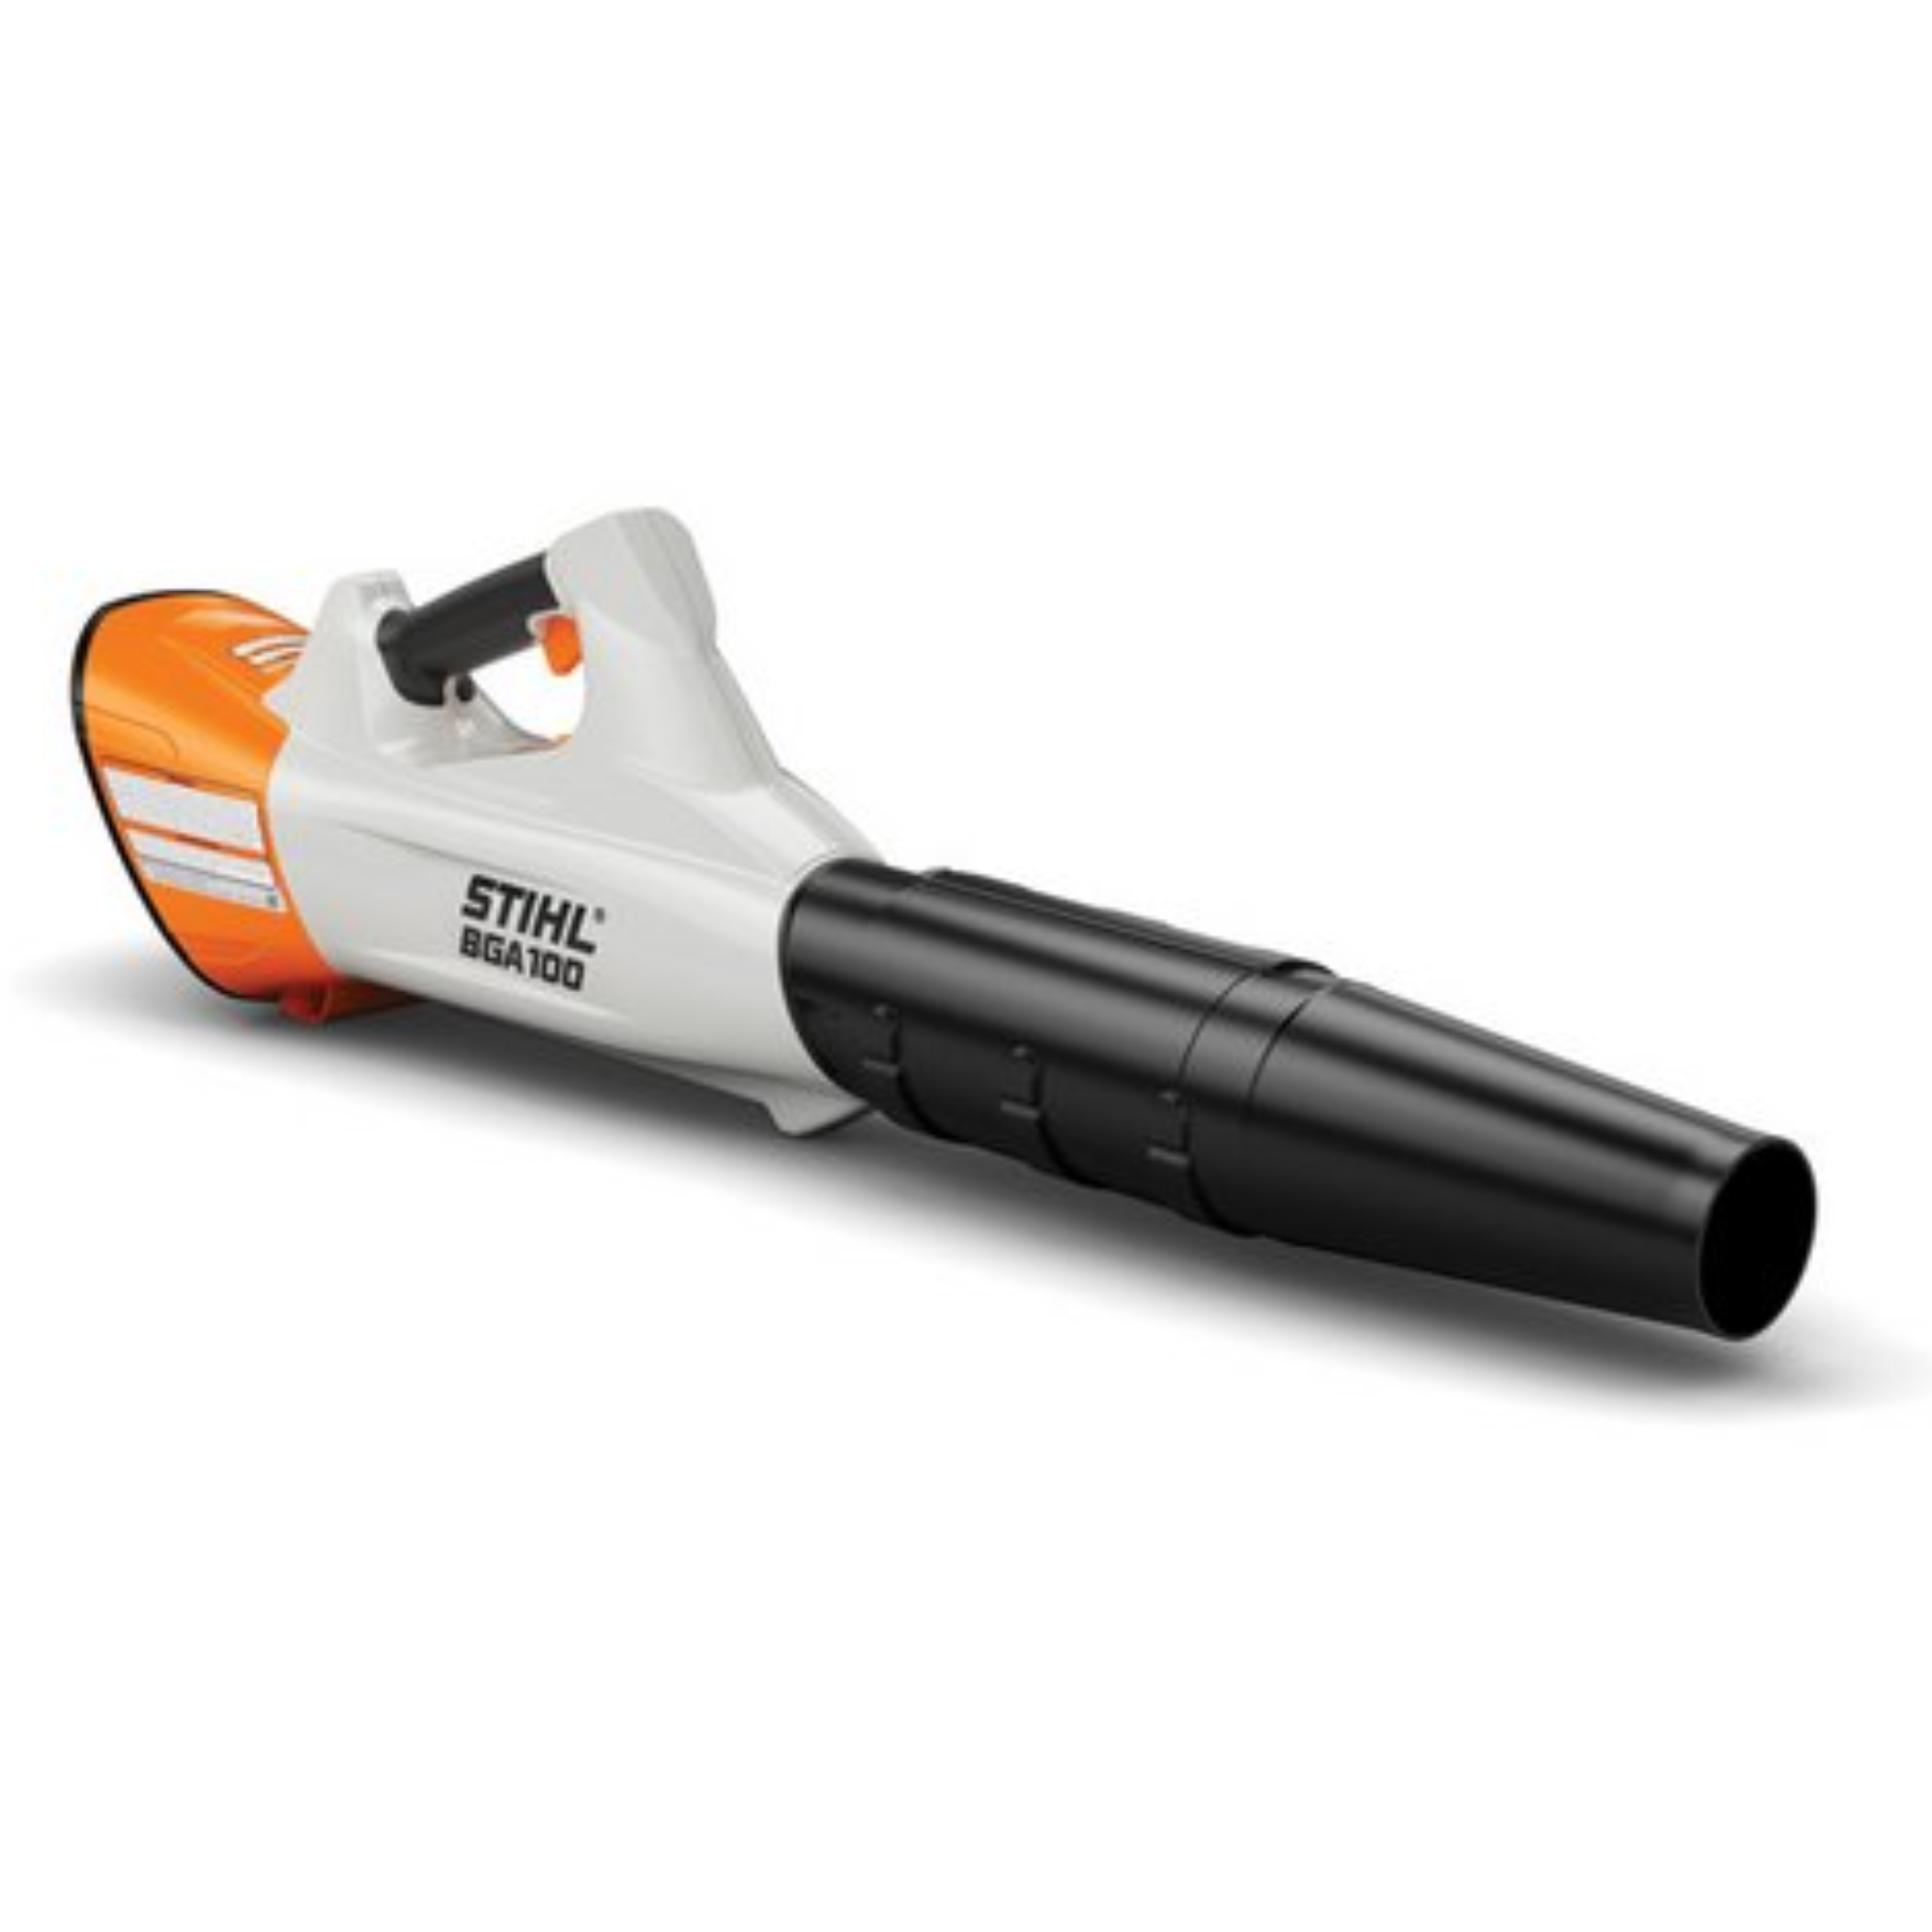 Stihl BGA 100 Battery Powered Handheld Blower | Tool Only